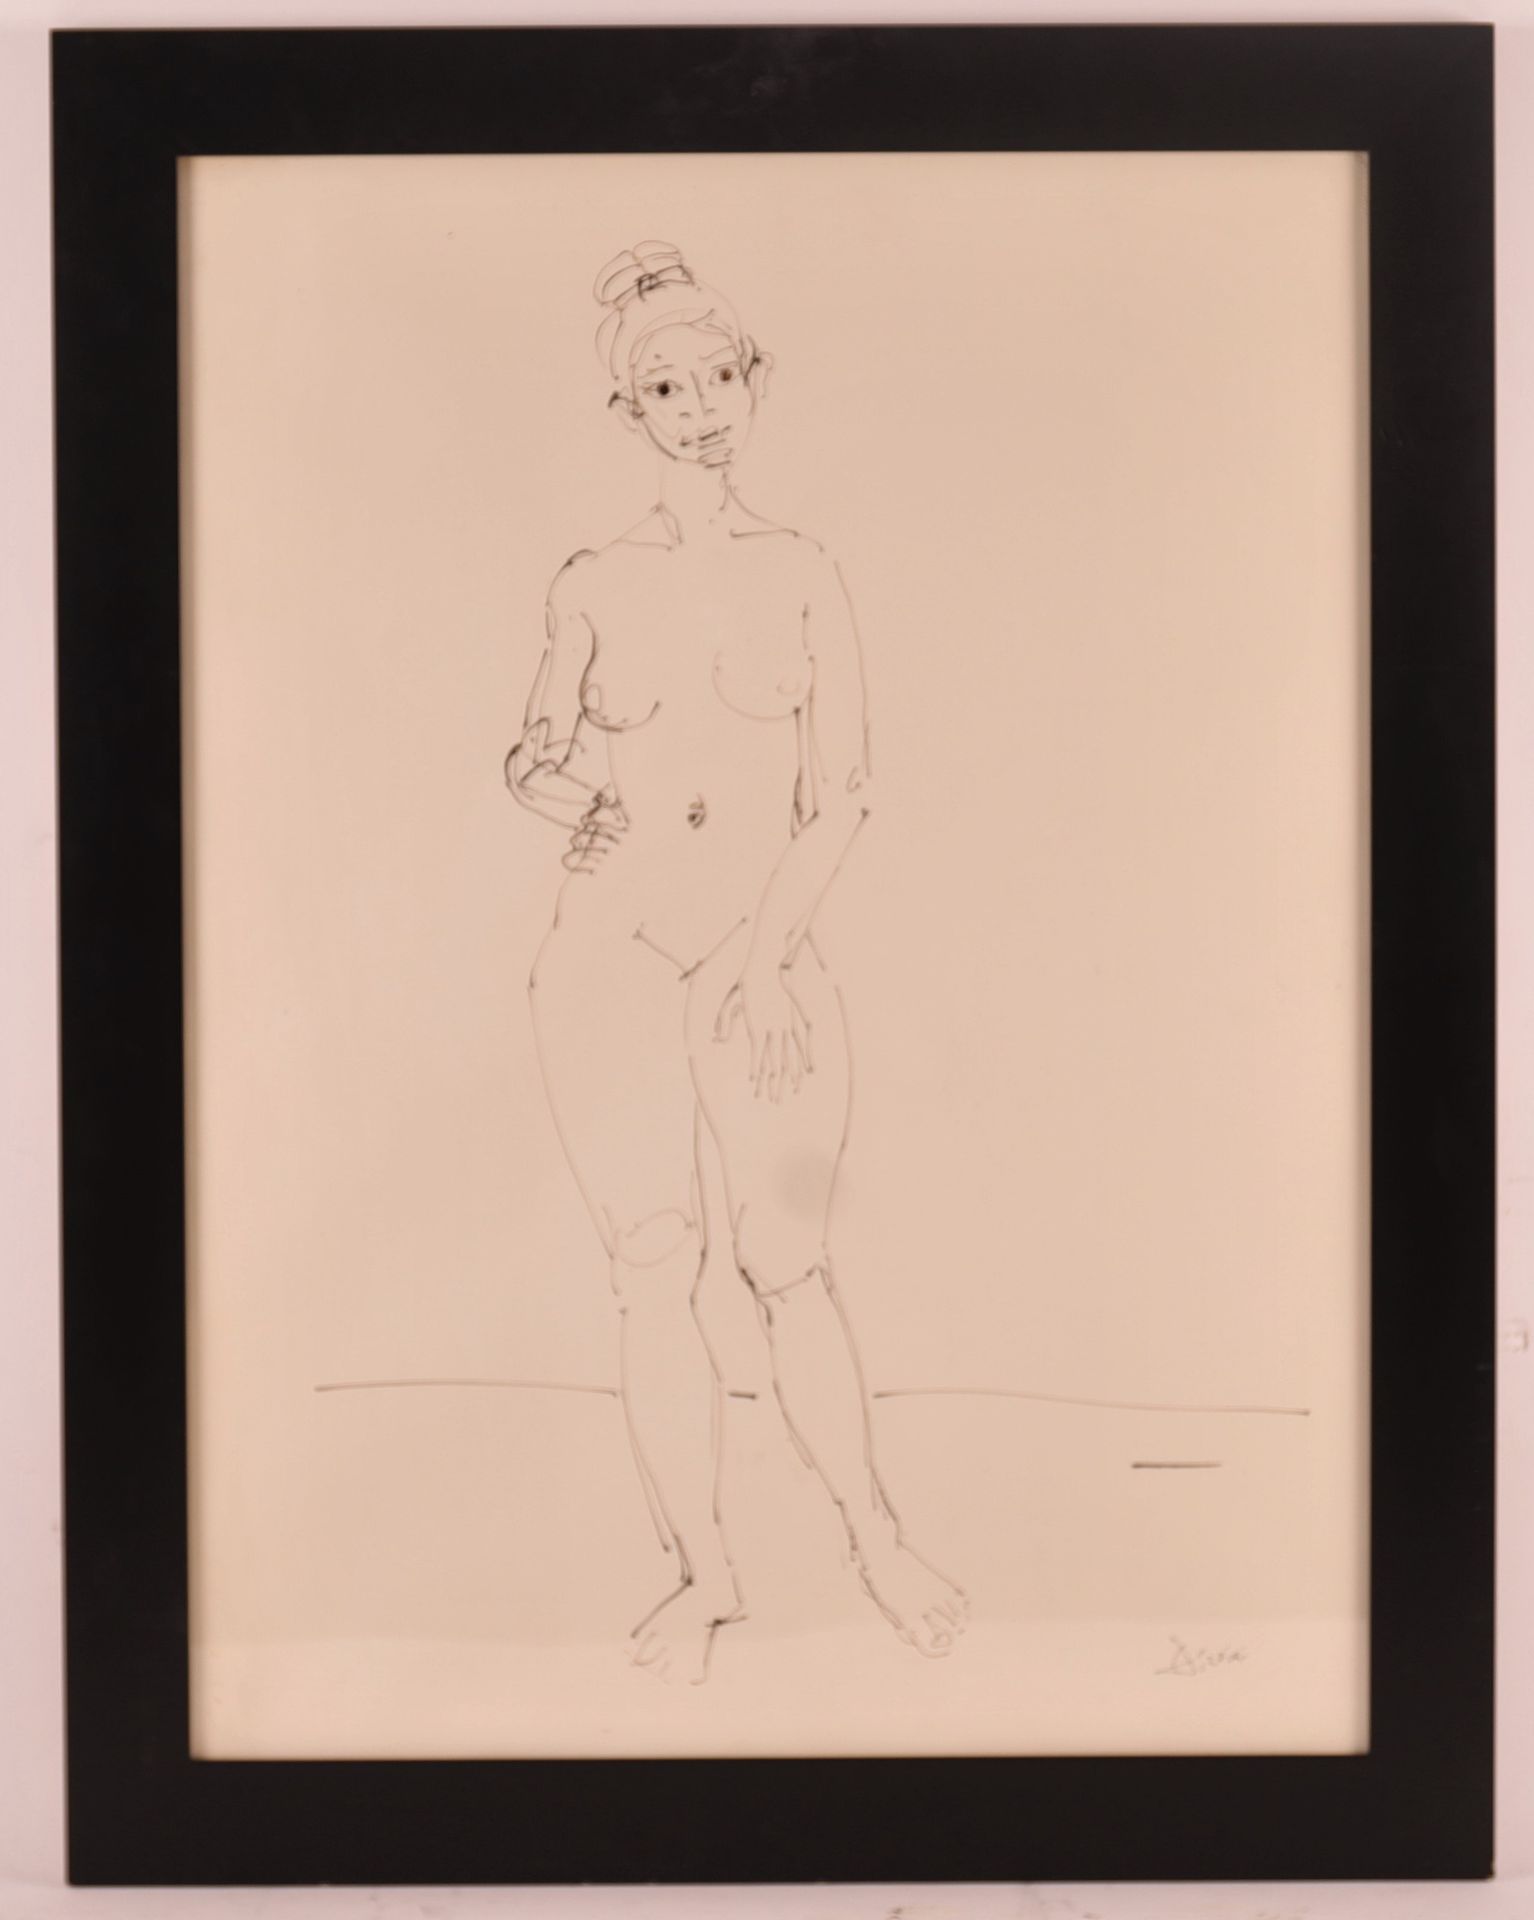 AÏZPIRÏ 保罗-艾兹皮里（1919-2016）的双面画《裸体的费米宁》。

纸上水墨，玻璃下装裱

右下方有签名

背面有一个女性裸体躺着

74,5 x&hellip;